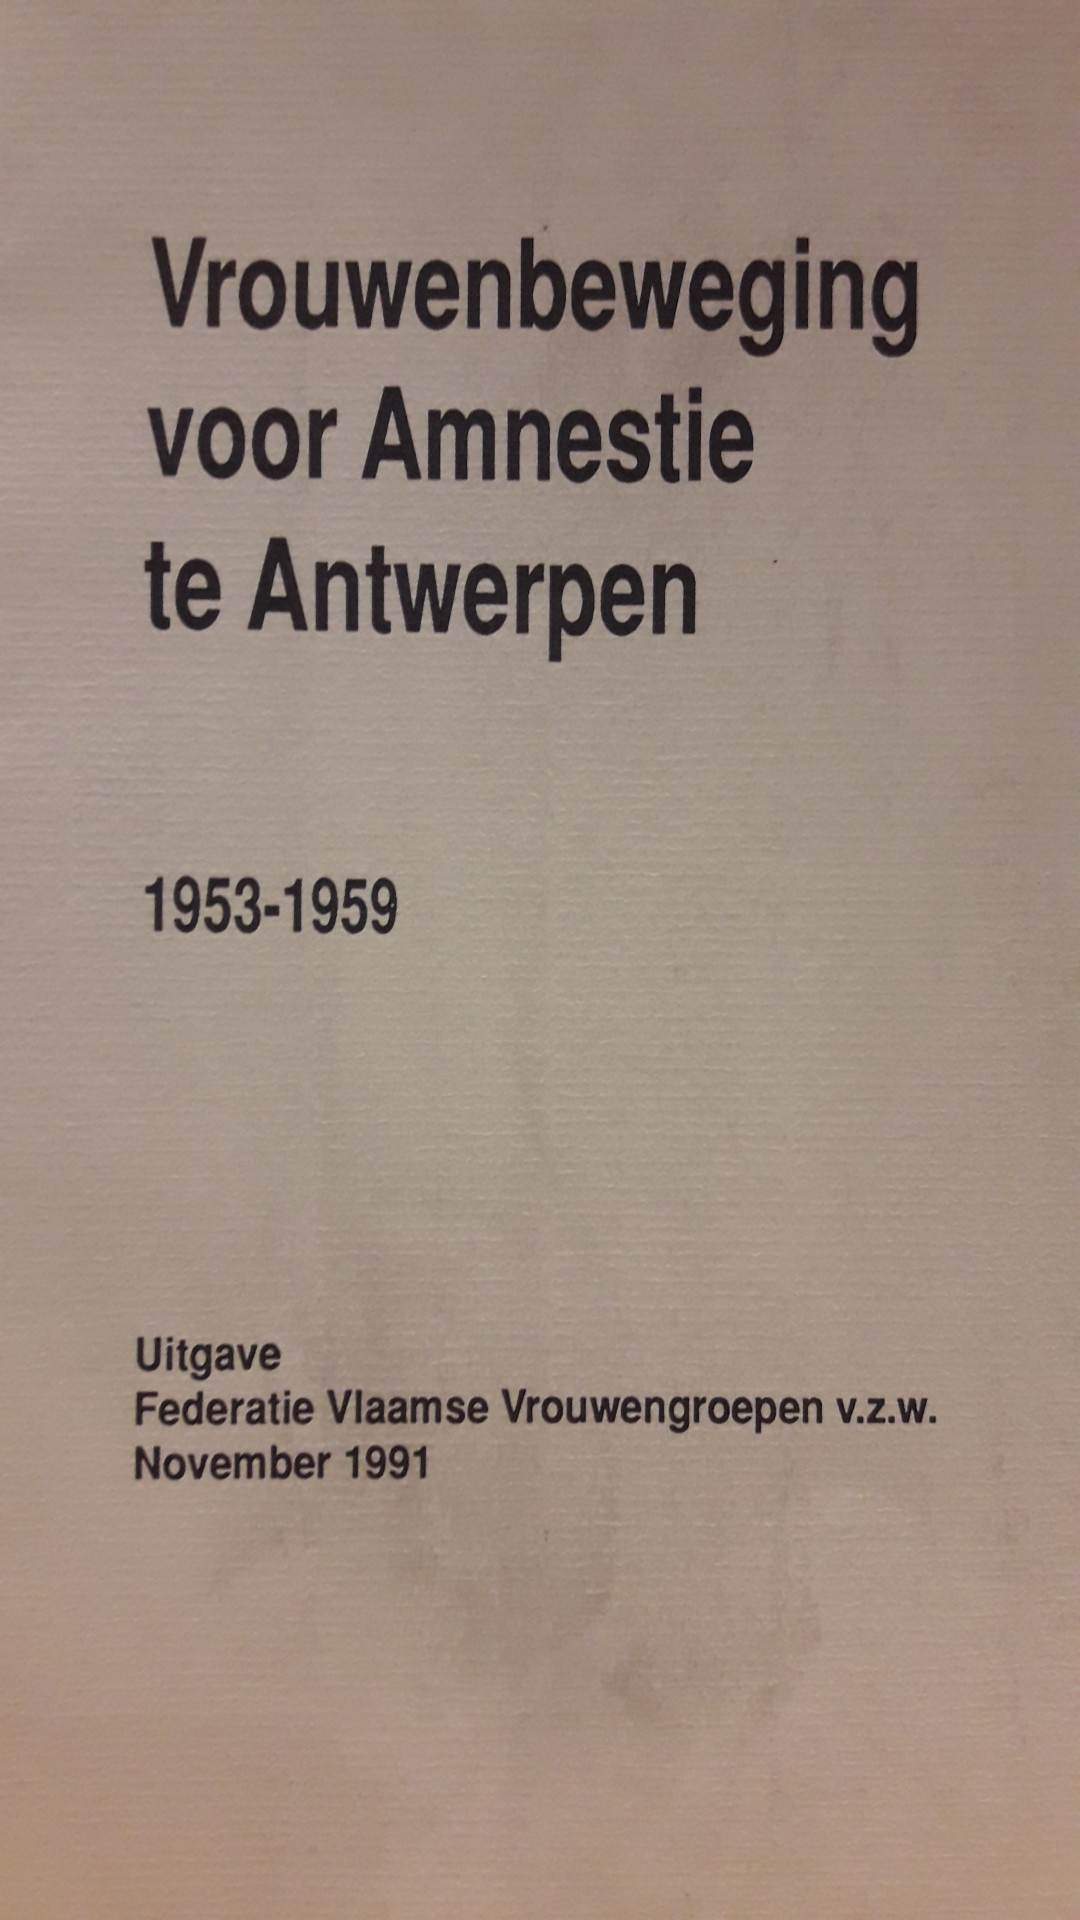 Vrouwenbeweging voor Amnestie in Antwerpen 1953 - 1959 / 60 blz